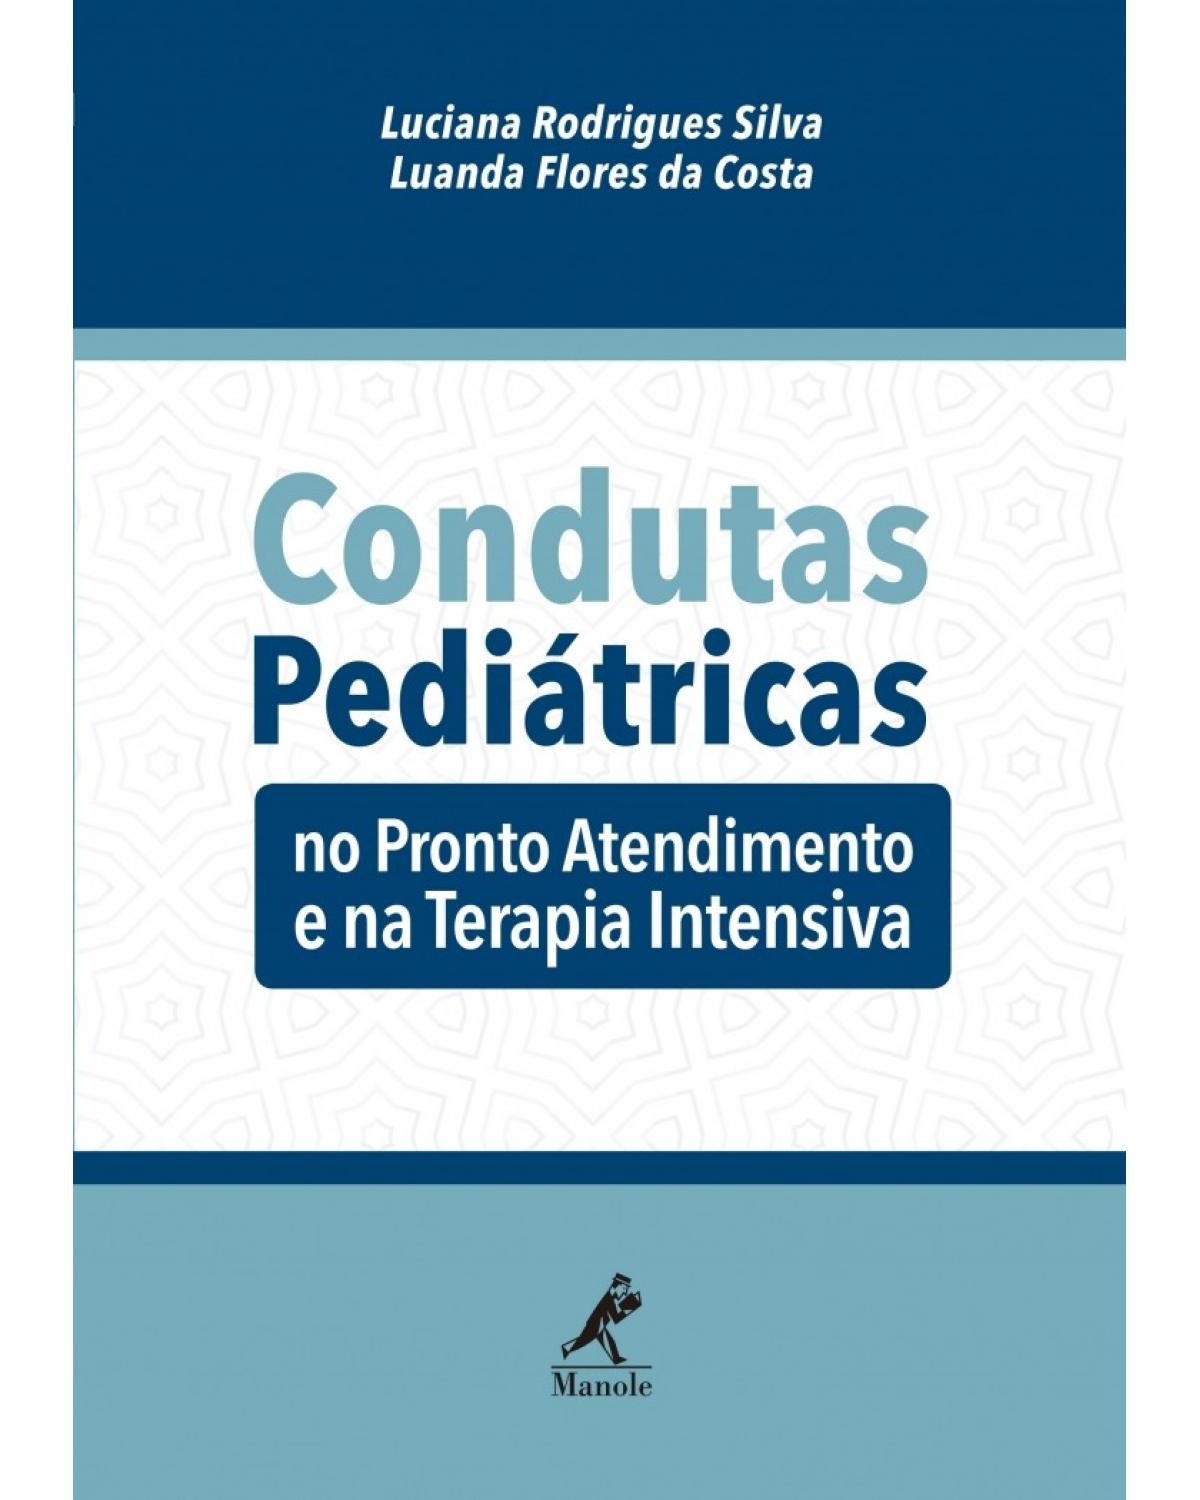 Condutas pediátricas - no pronto atendimento e na terapia intensiva - 1ª Edição | 2017